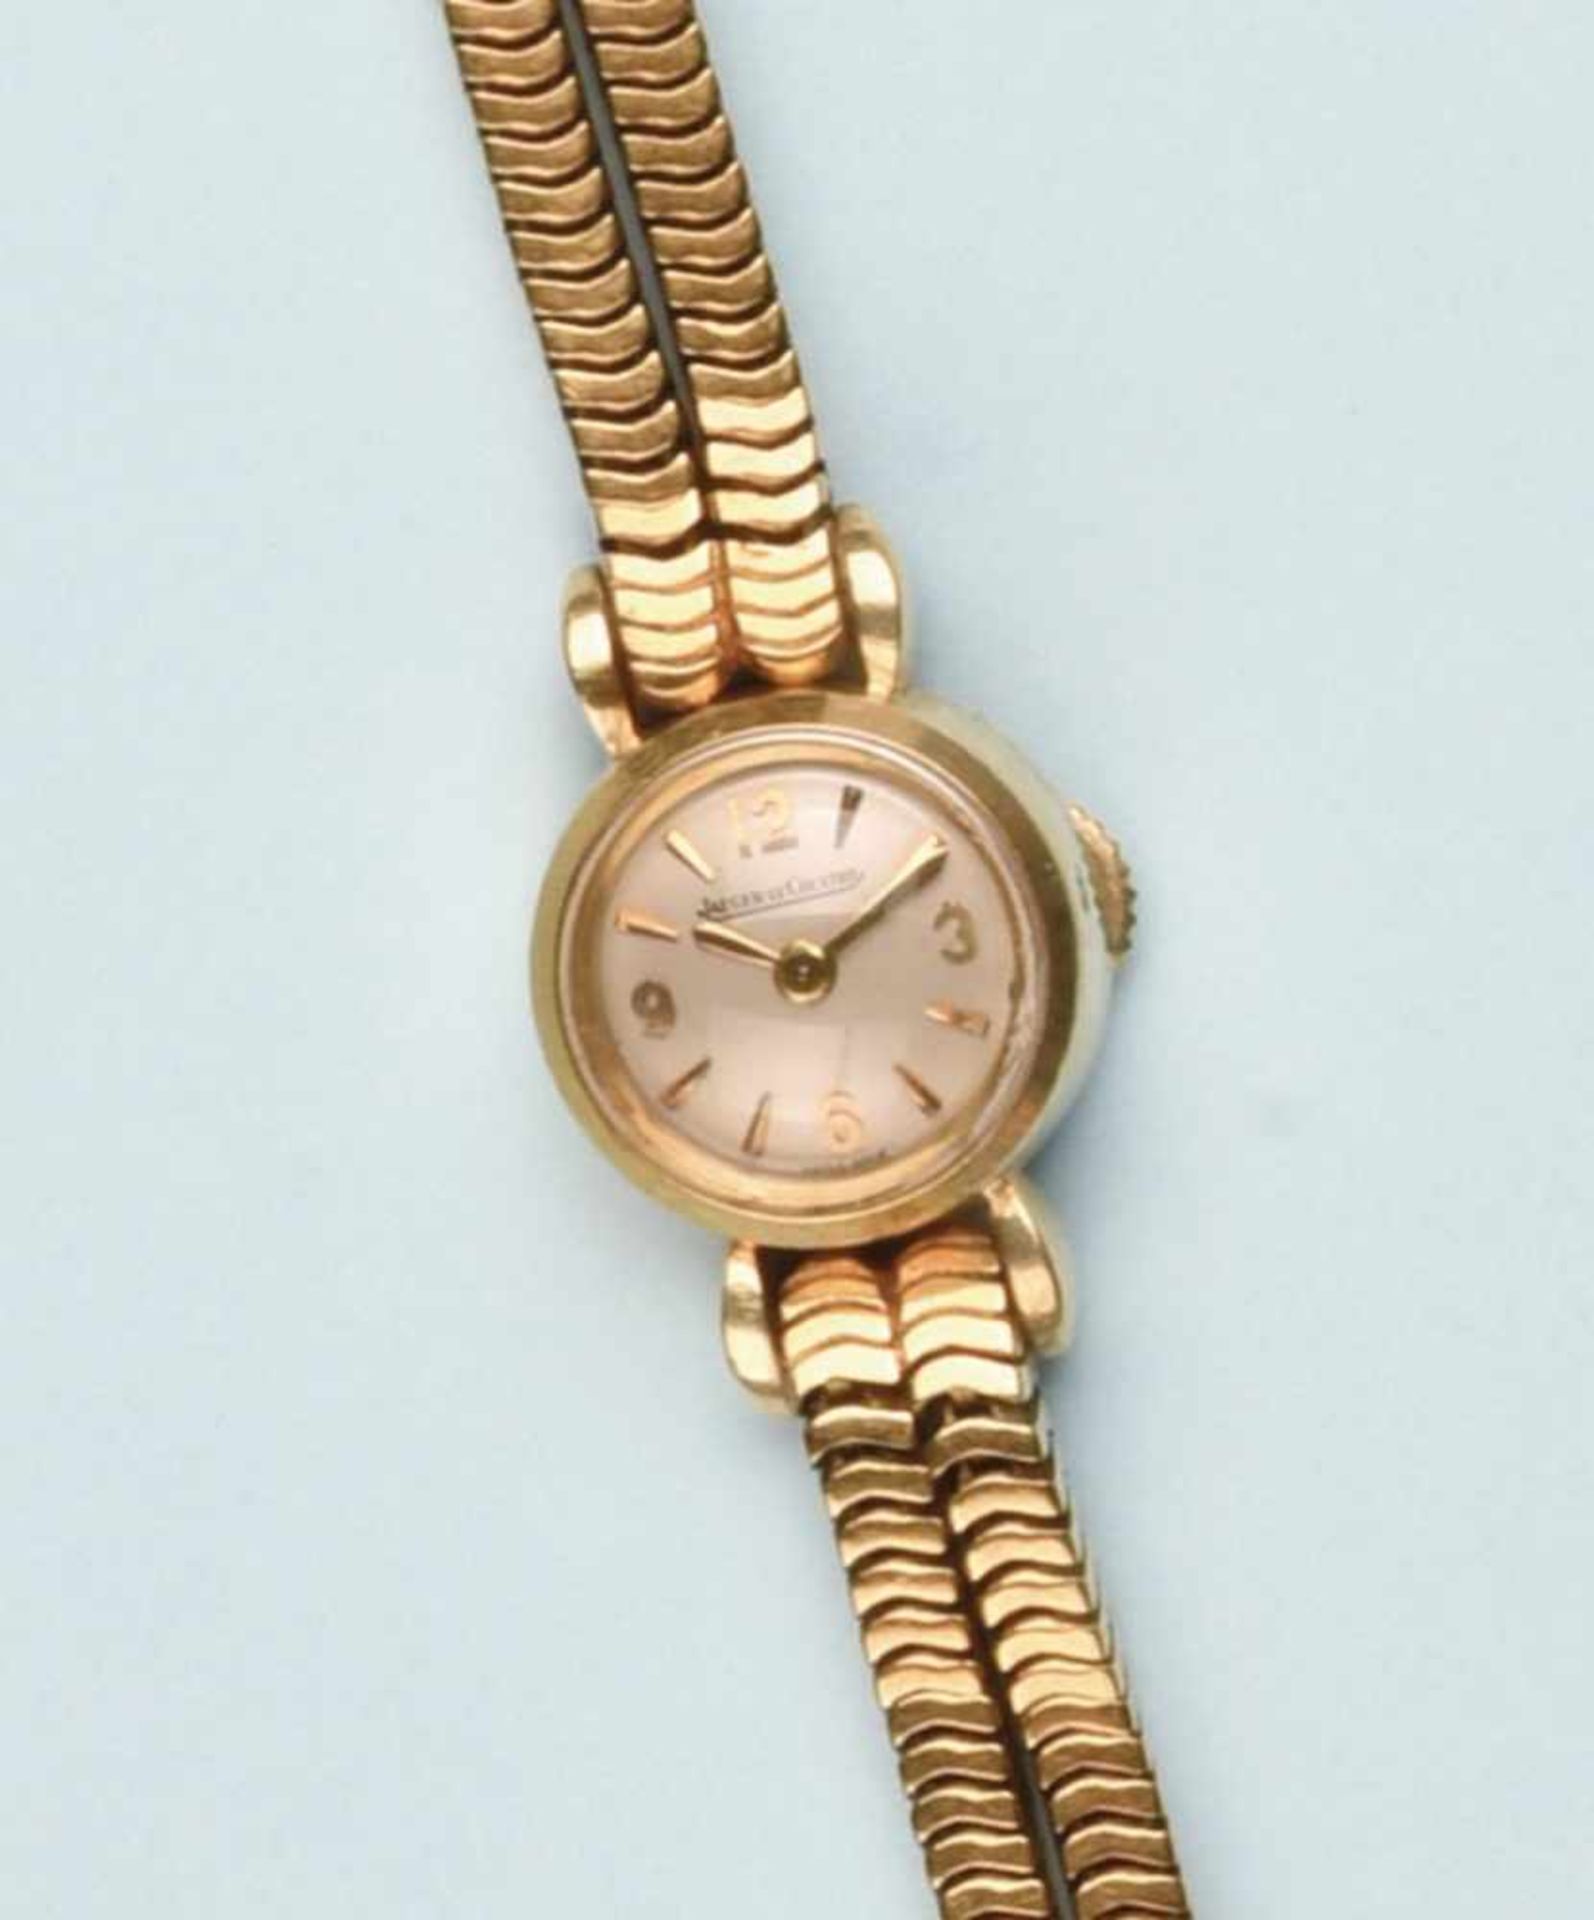 Bracelet montre pour dame en or jaune 750 de marque "JAEGER- LECOULTRE". La montre de forme ronde,